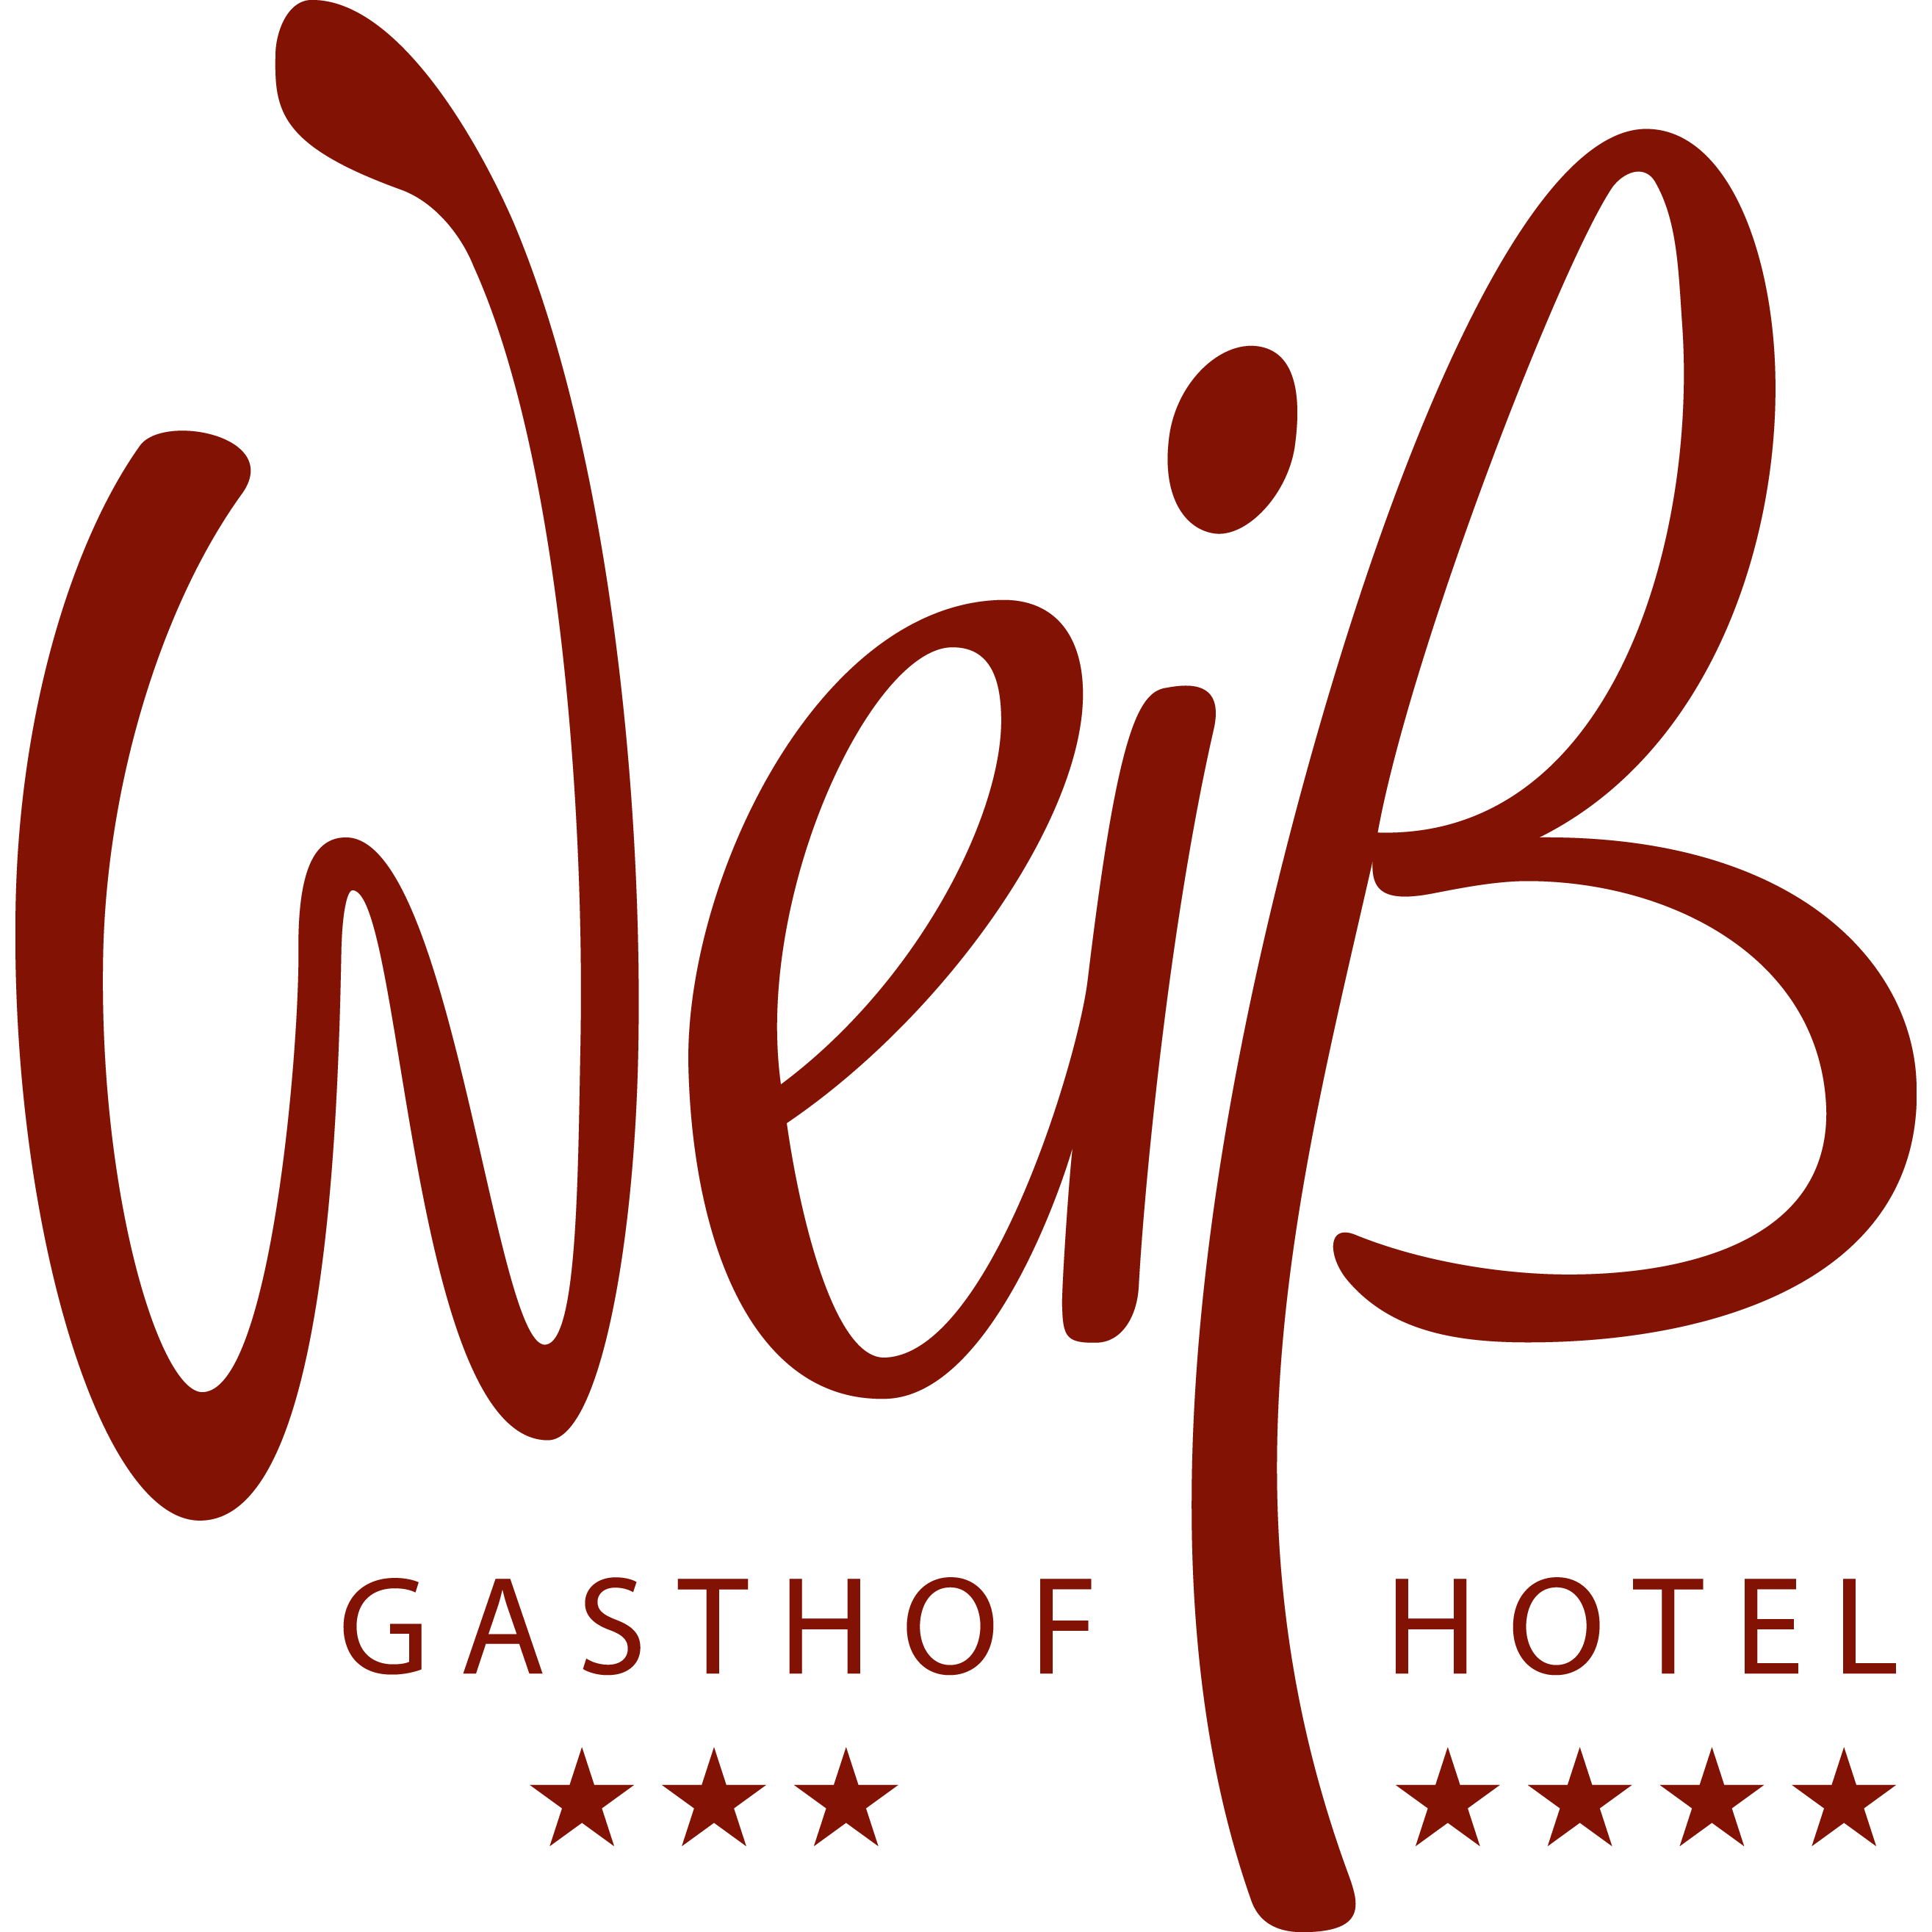 Restaurtant Hotel Weiss